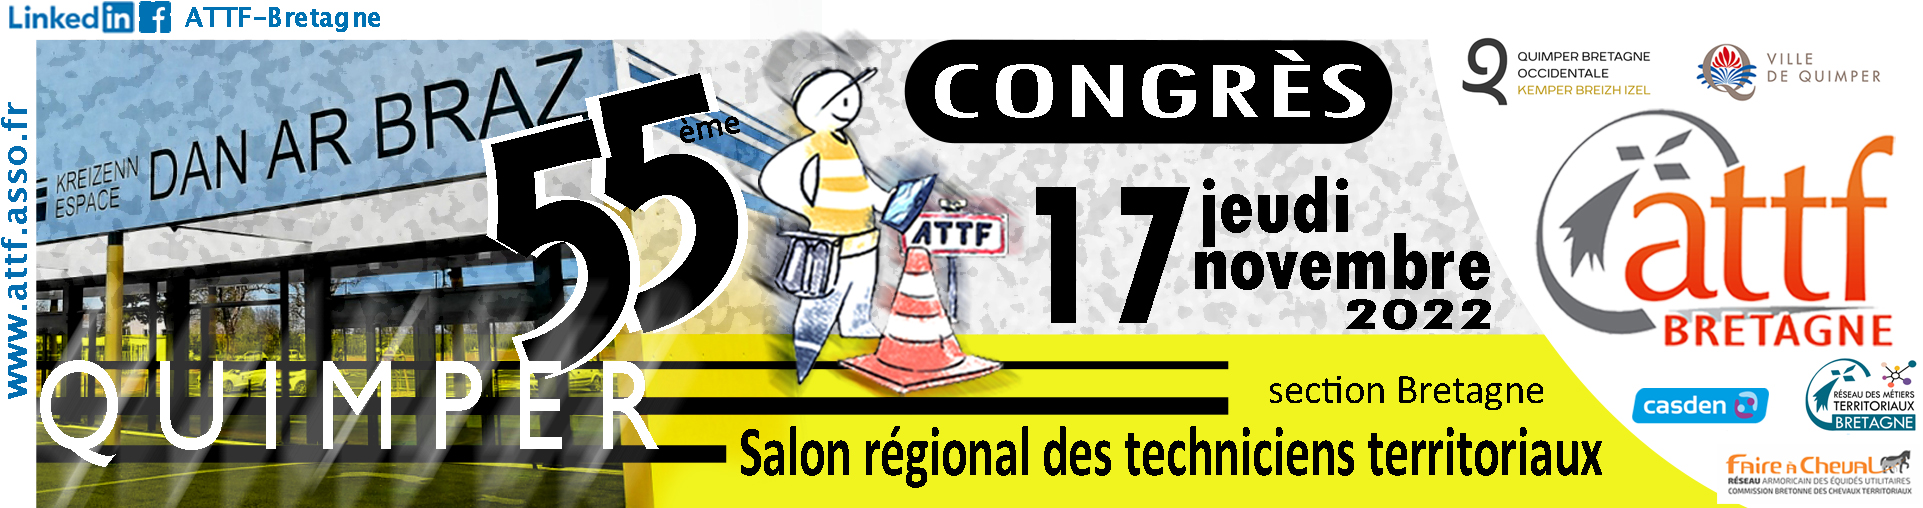 55e congres ATTF Bretagne Quimper 2022